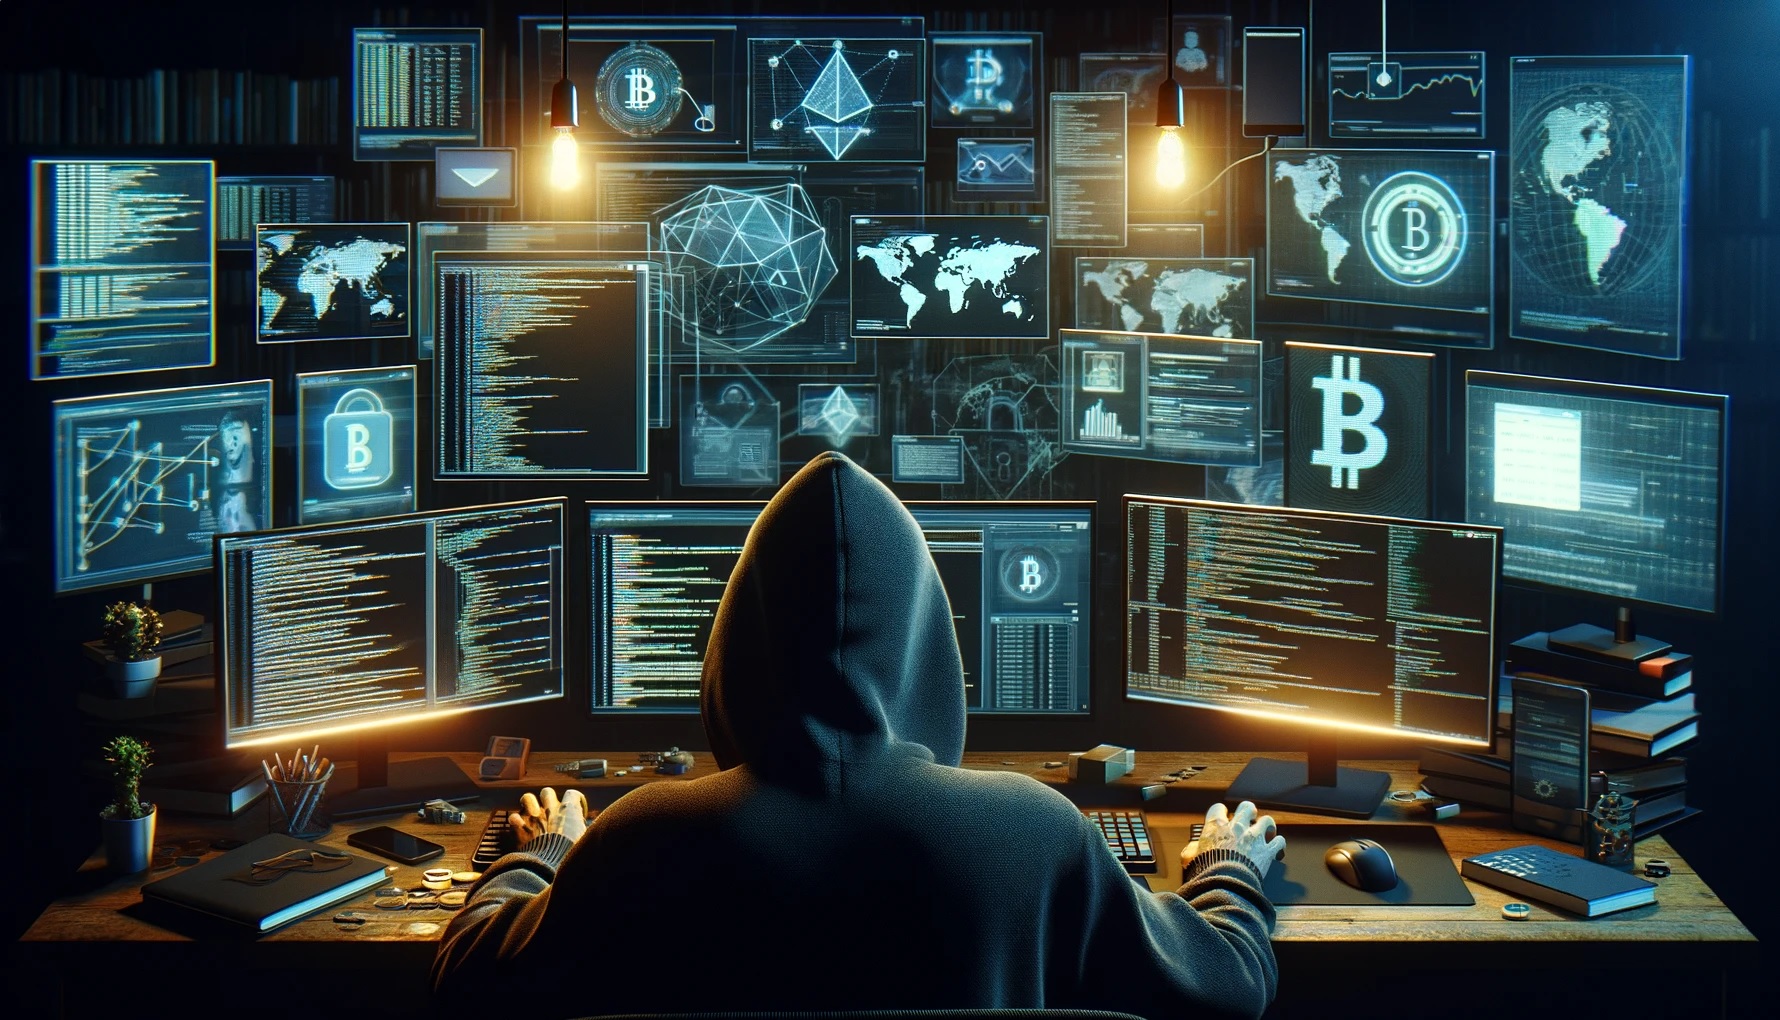 Hacker invadindo emails para roubar criptomoedas (Imagem gerada por AI)